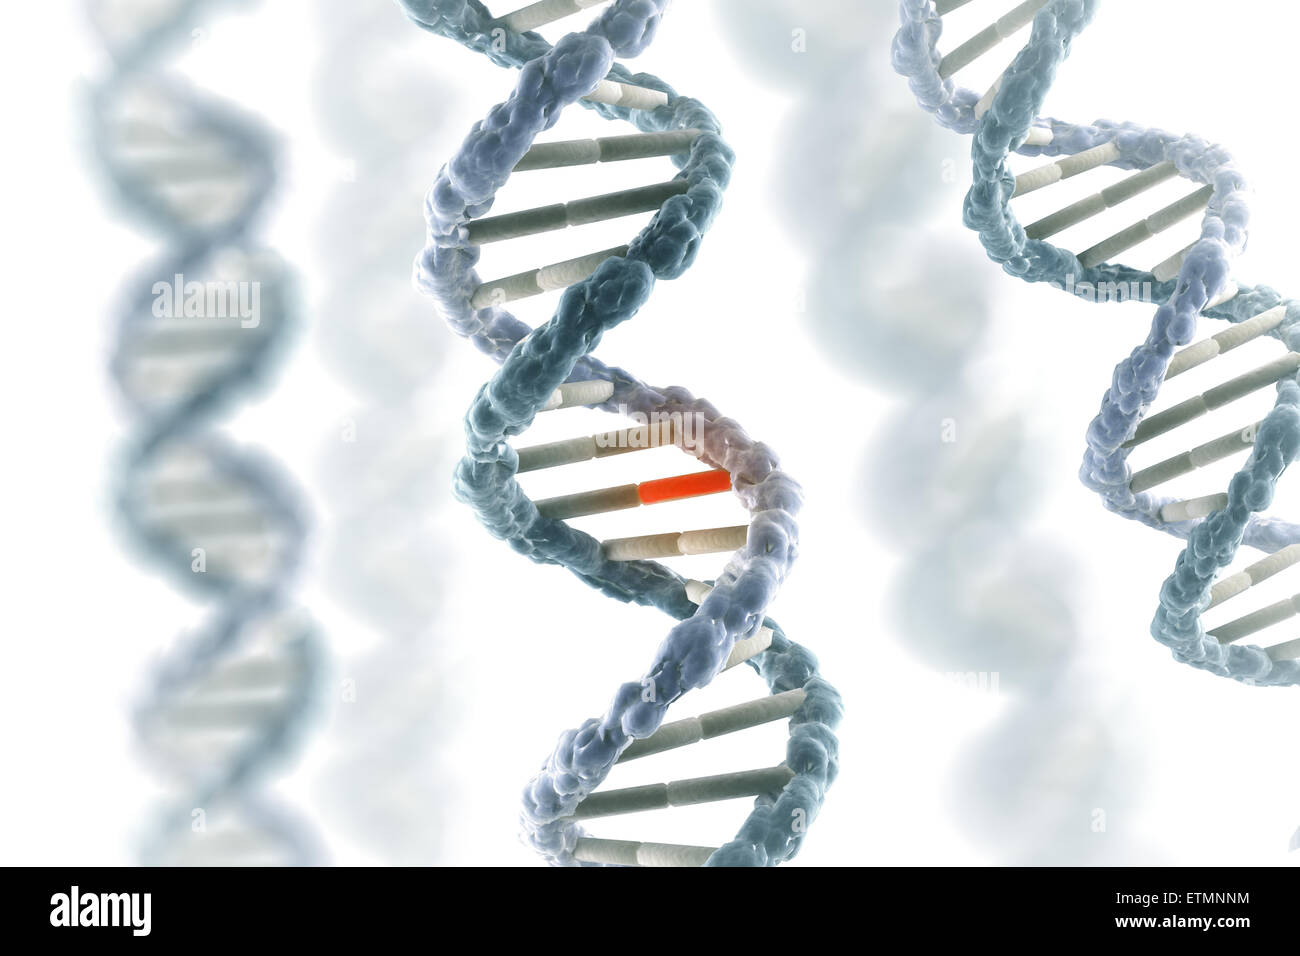 Stilisierte Darstellung der Stränge der menschlichen DNA Desoxyribonukleinsäure, während der Replikation Gen mutiert. Stockfoto